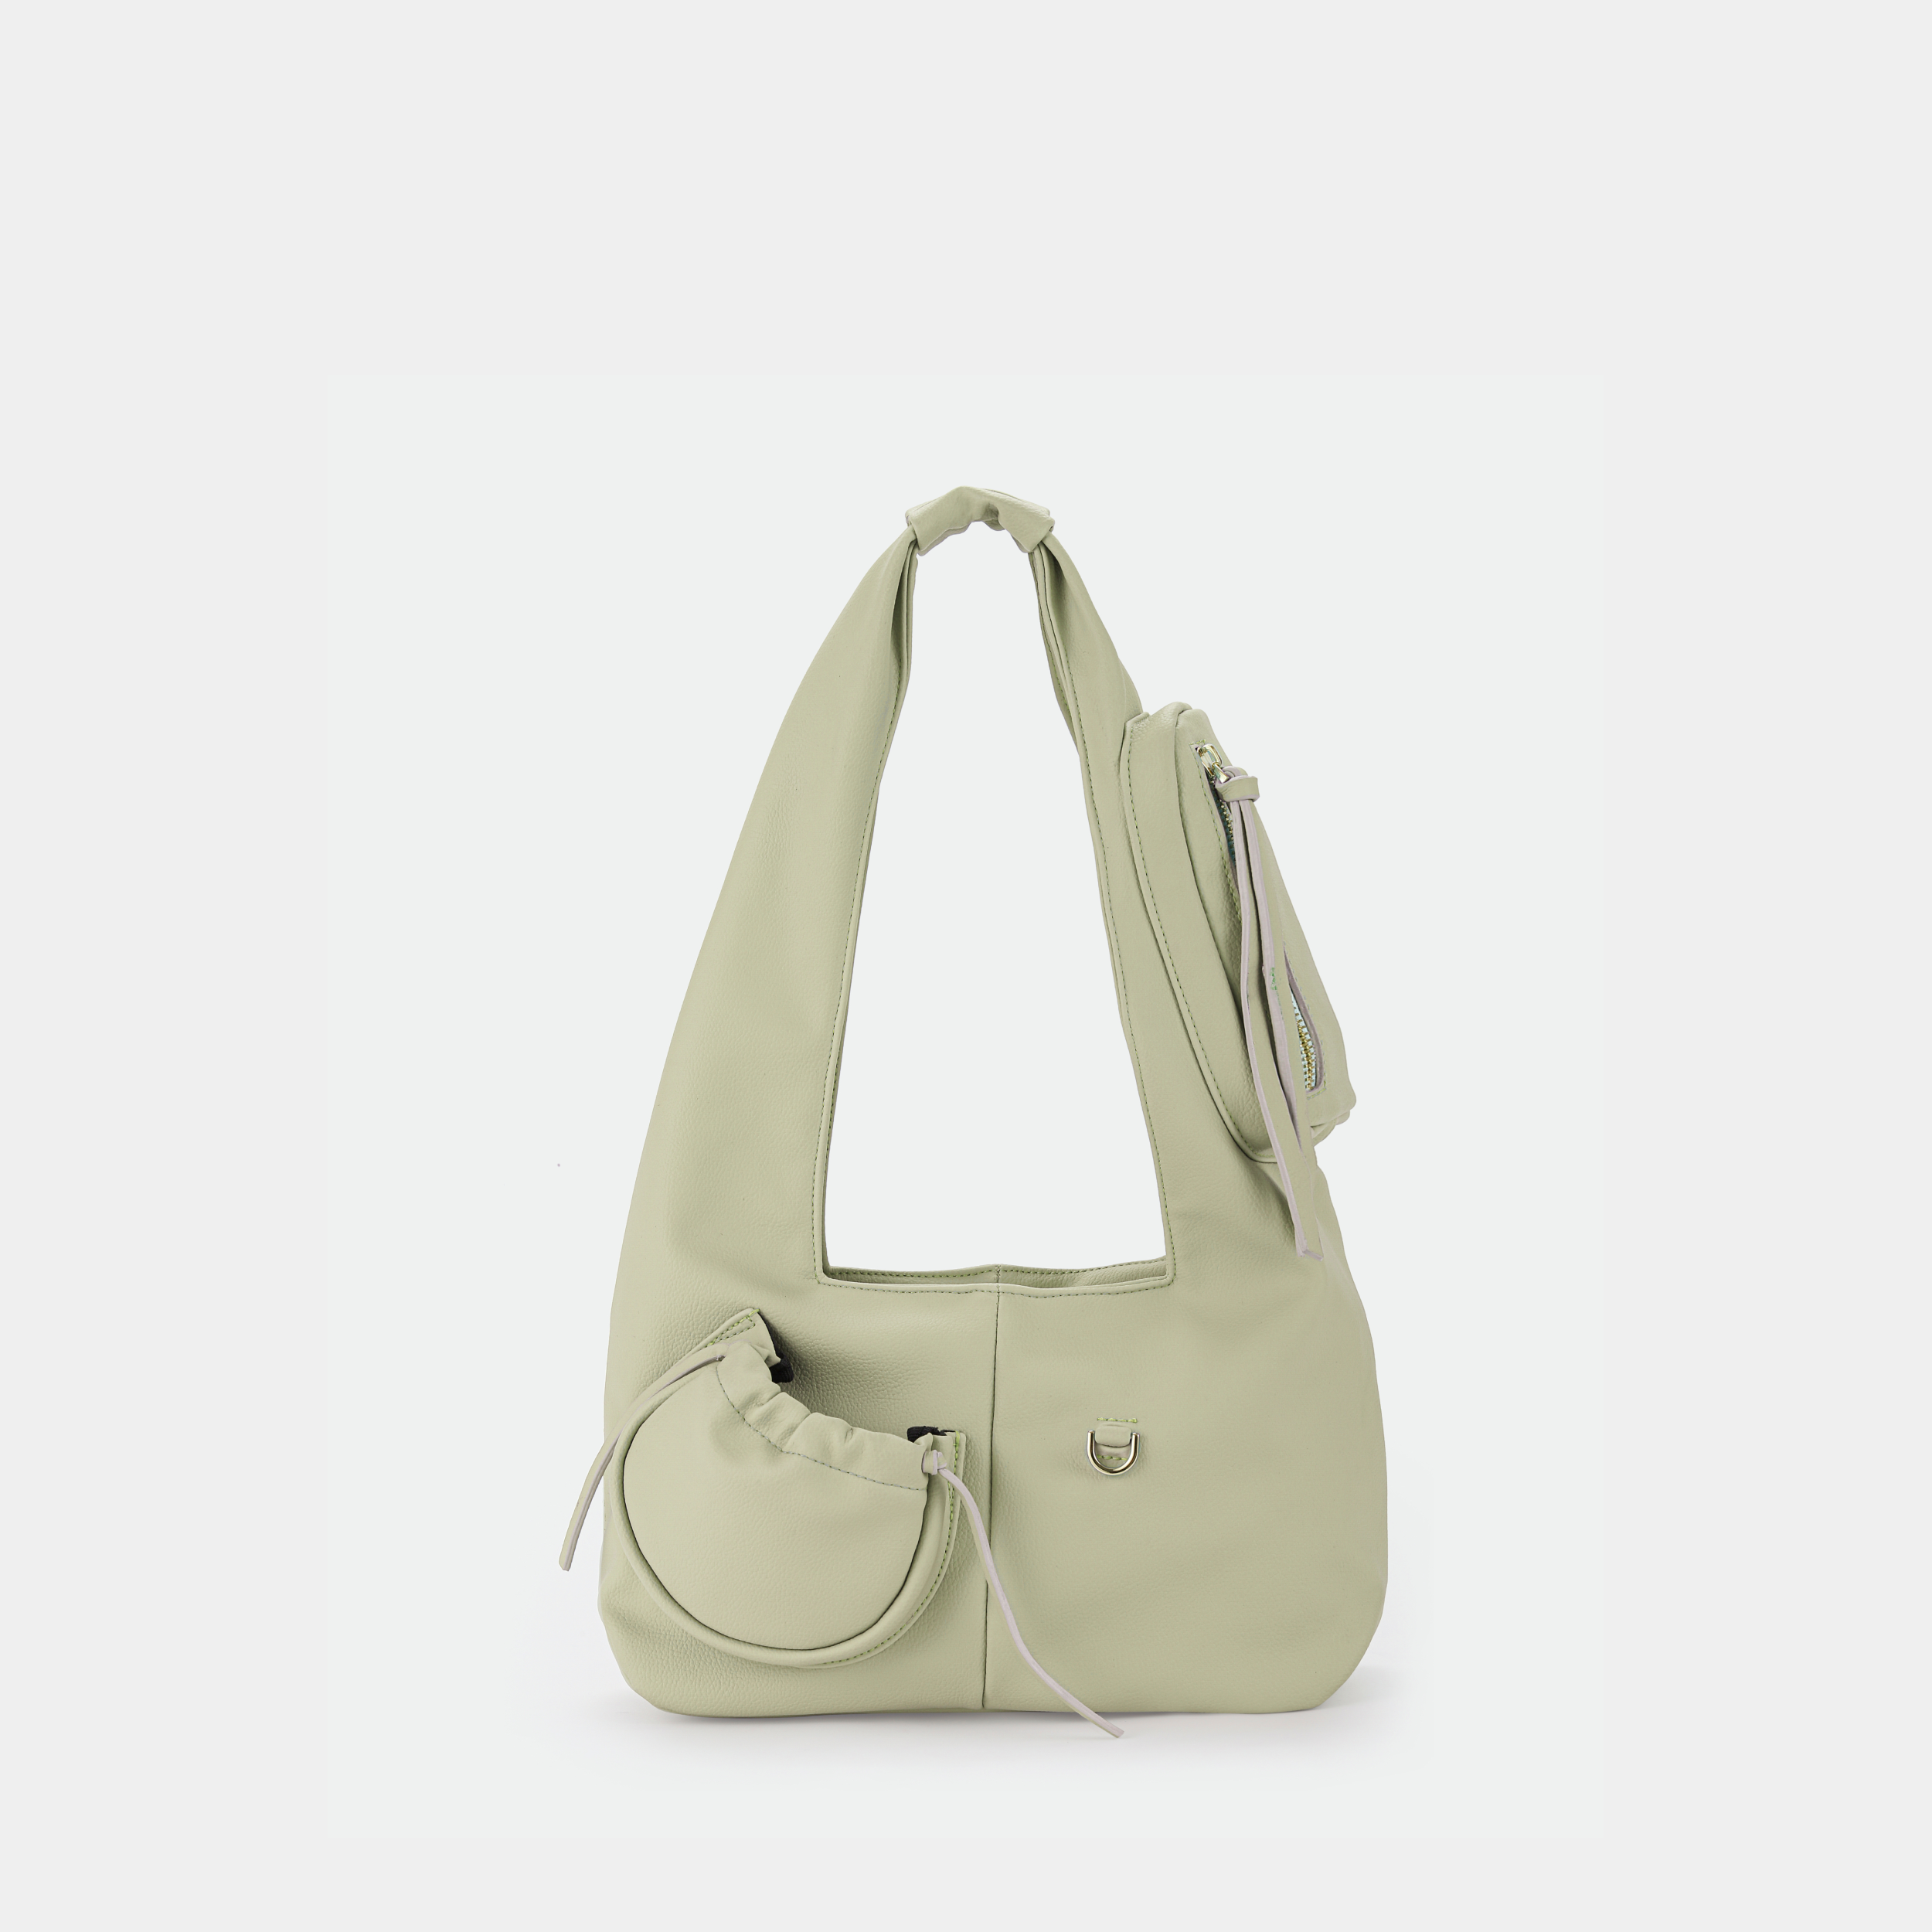 Túi xách Hobo C2-Pocket size Medium (M) màu beige sáng